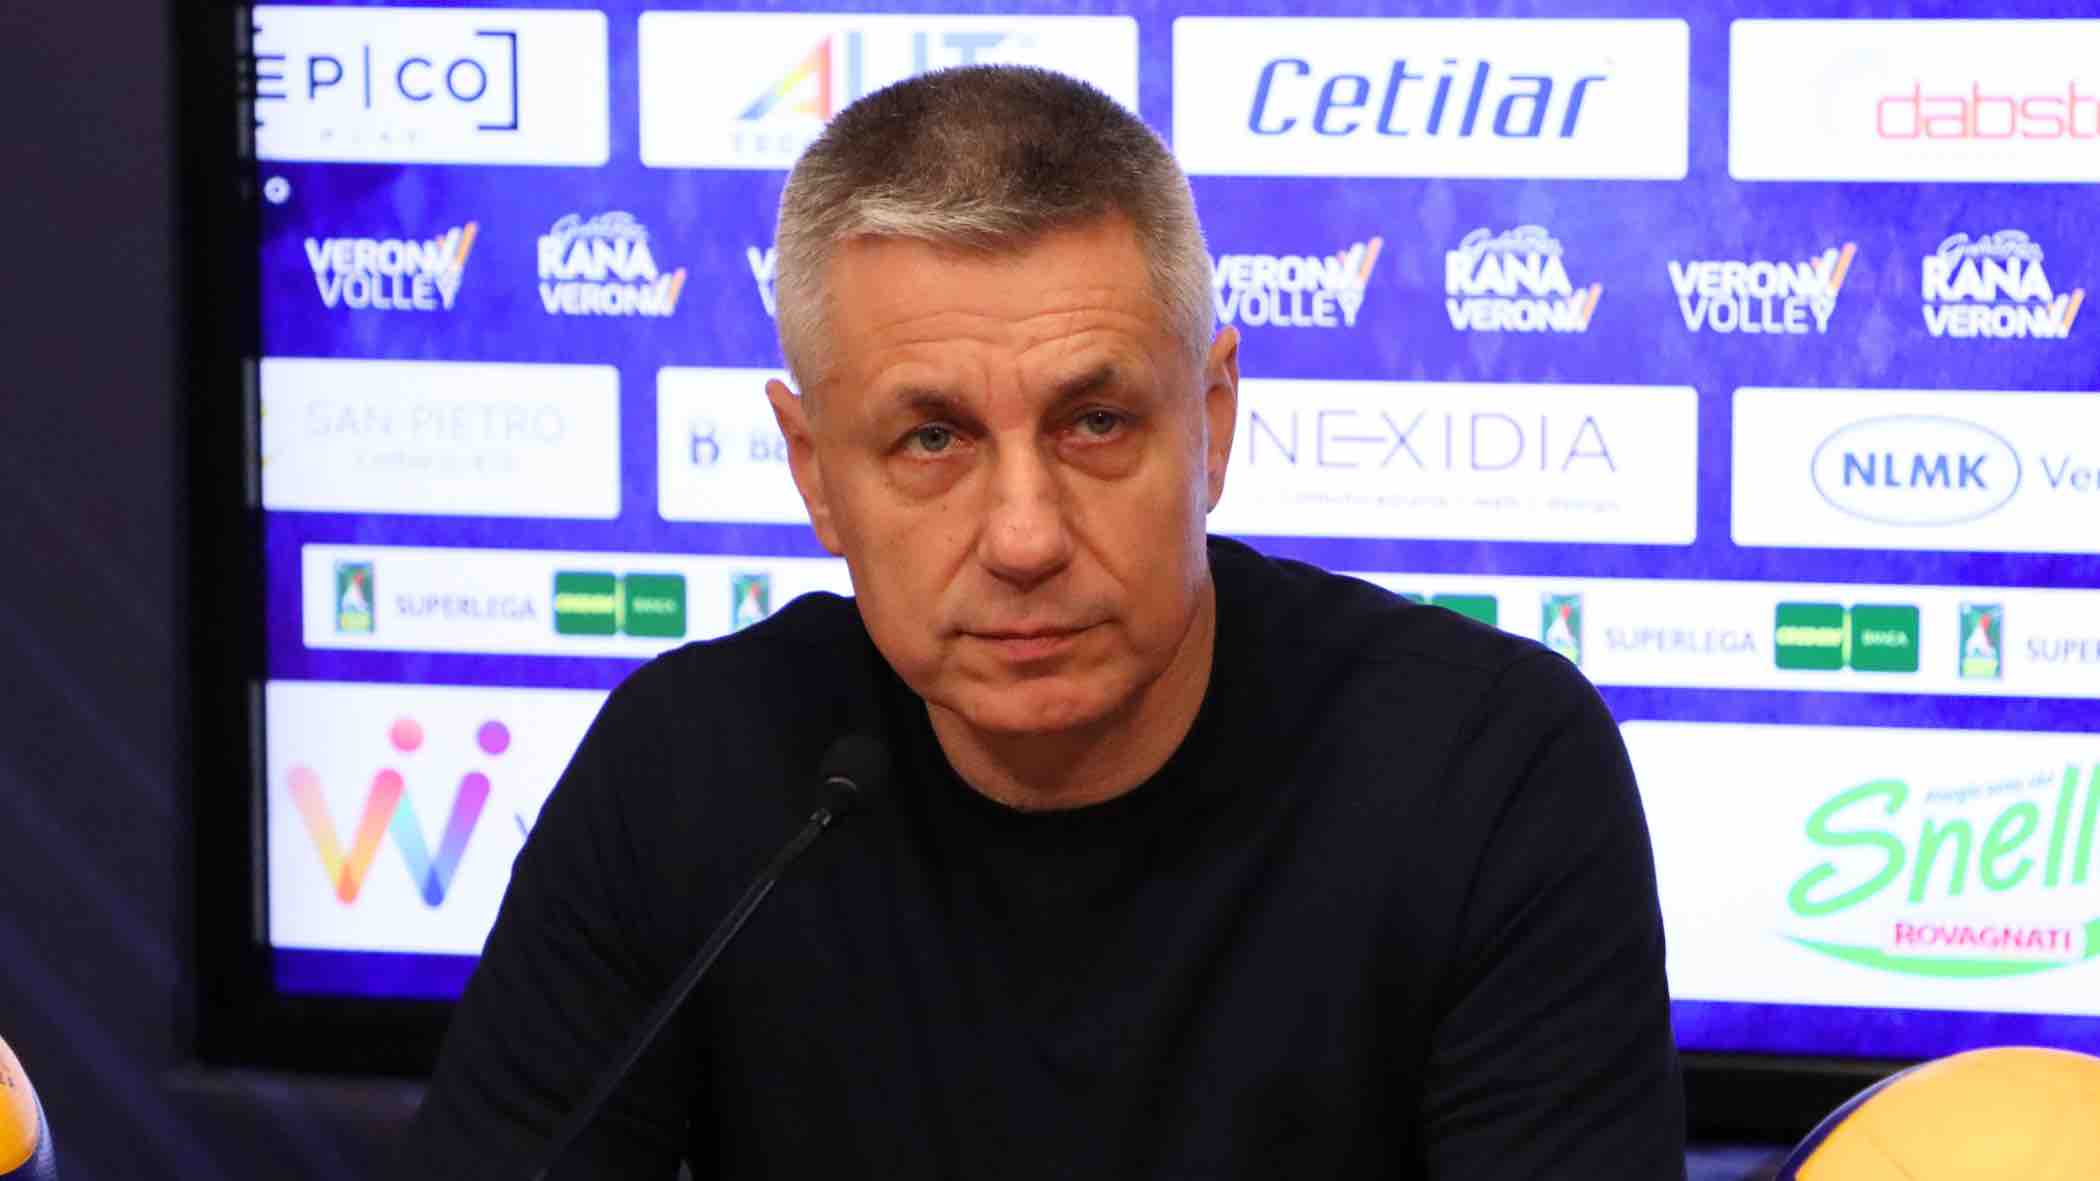 Rana Verona, coach Stoytchev in vista della sfida con Catania: “Non bisogna sottovalutare nessun avversario”